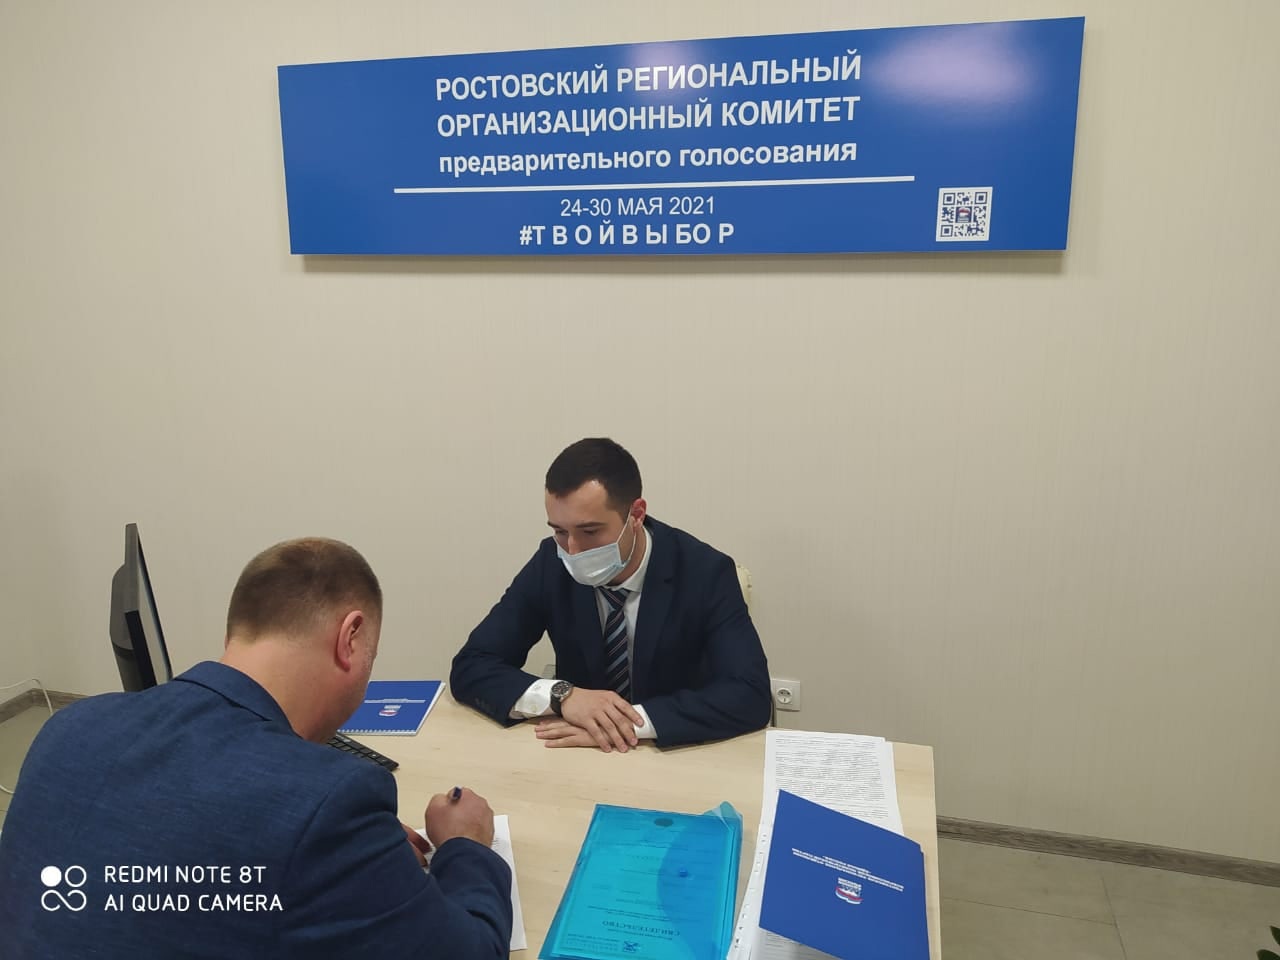 Бородай подал документы на праймериз «Единой России» в Ростовской области